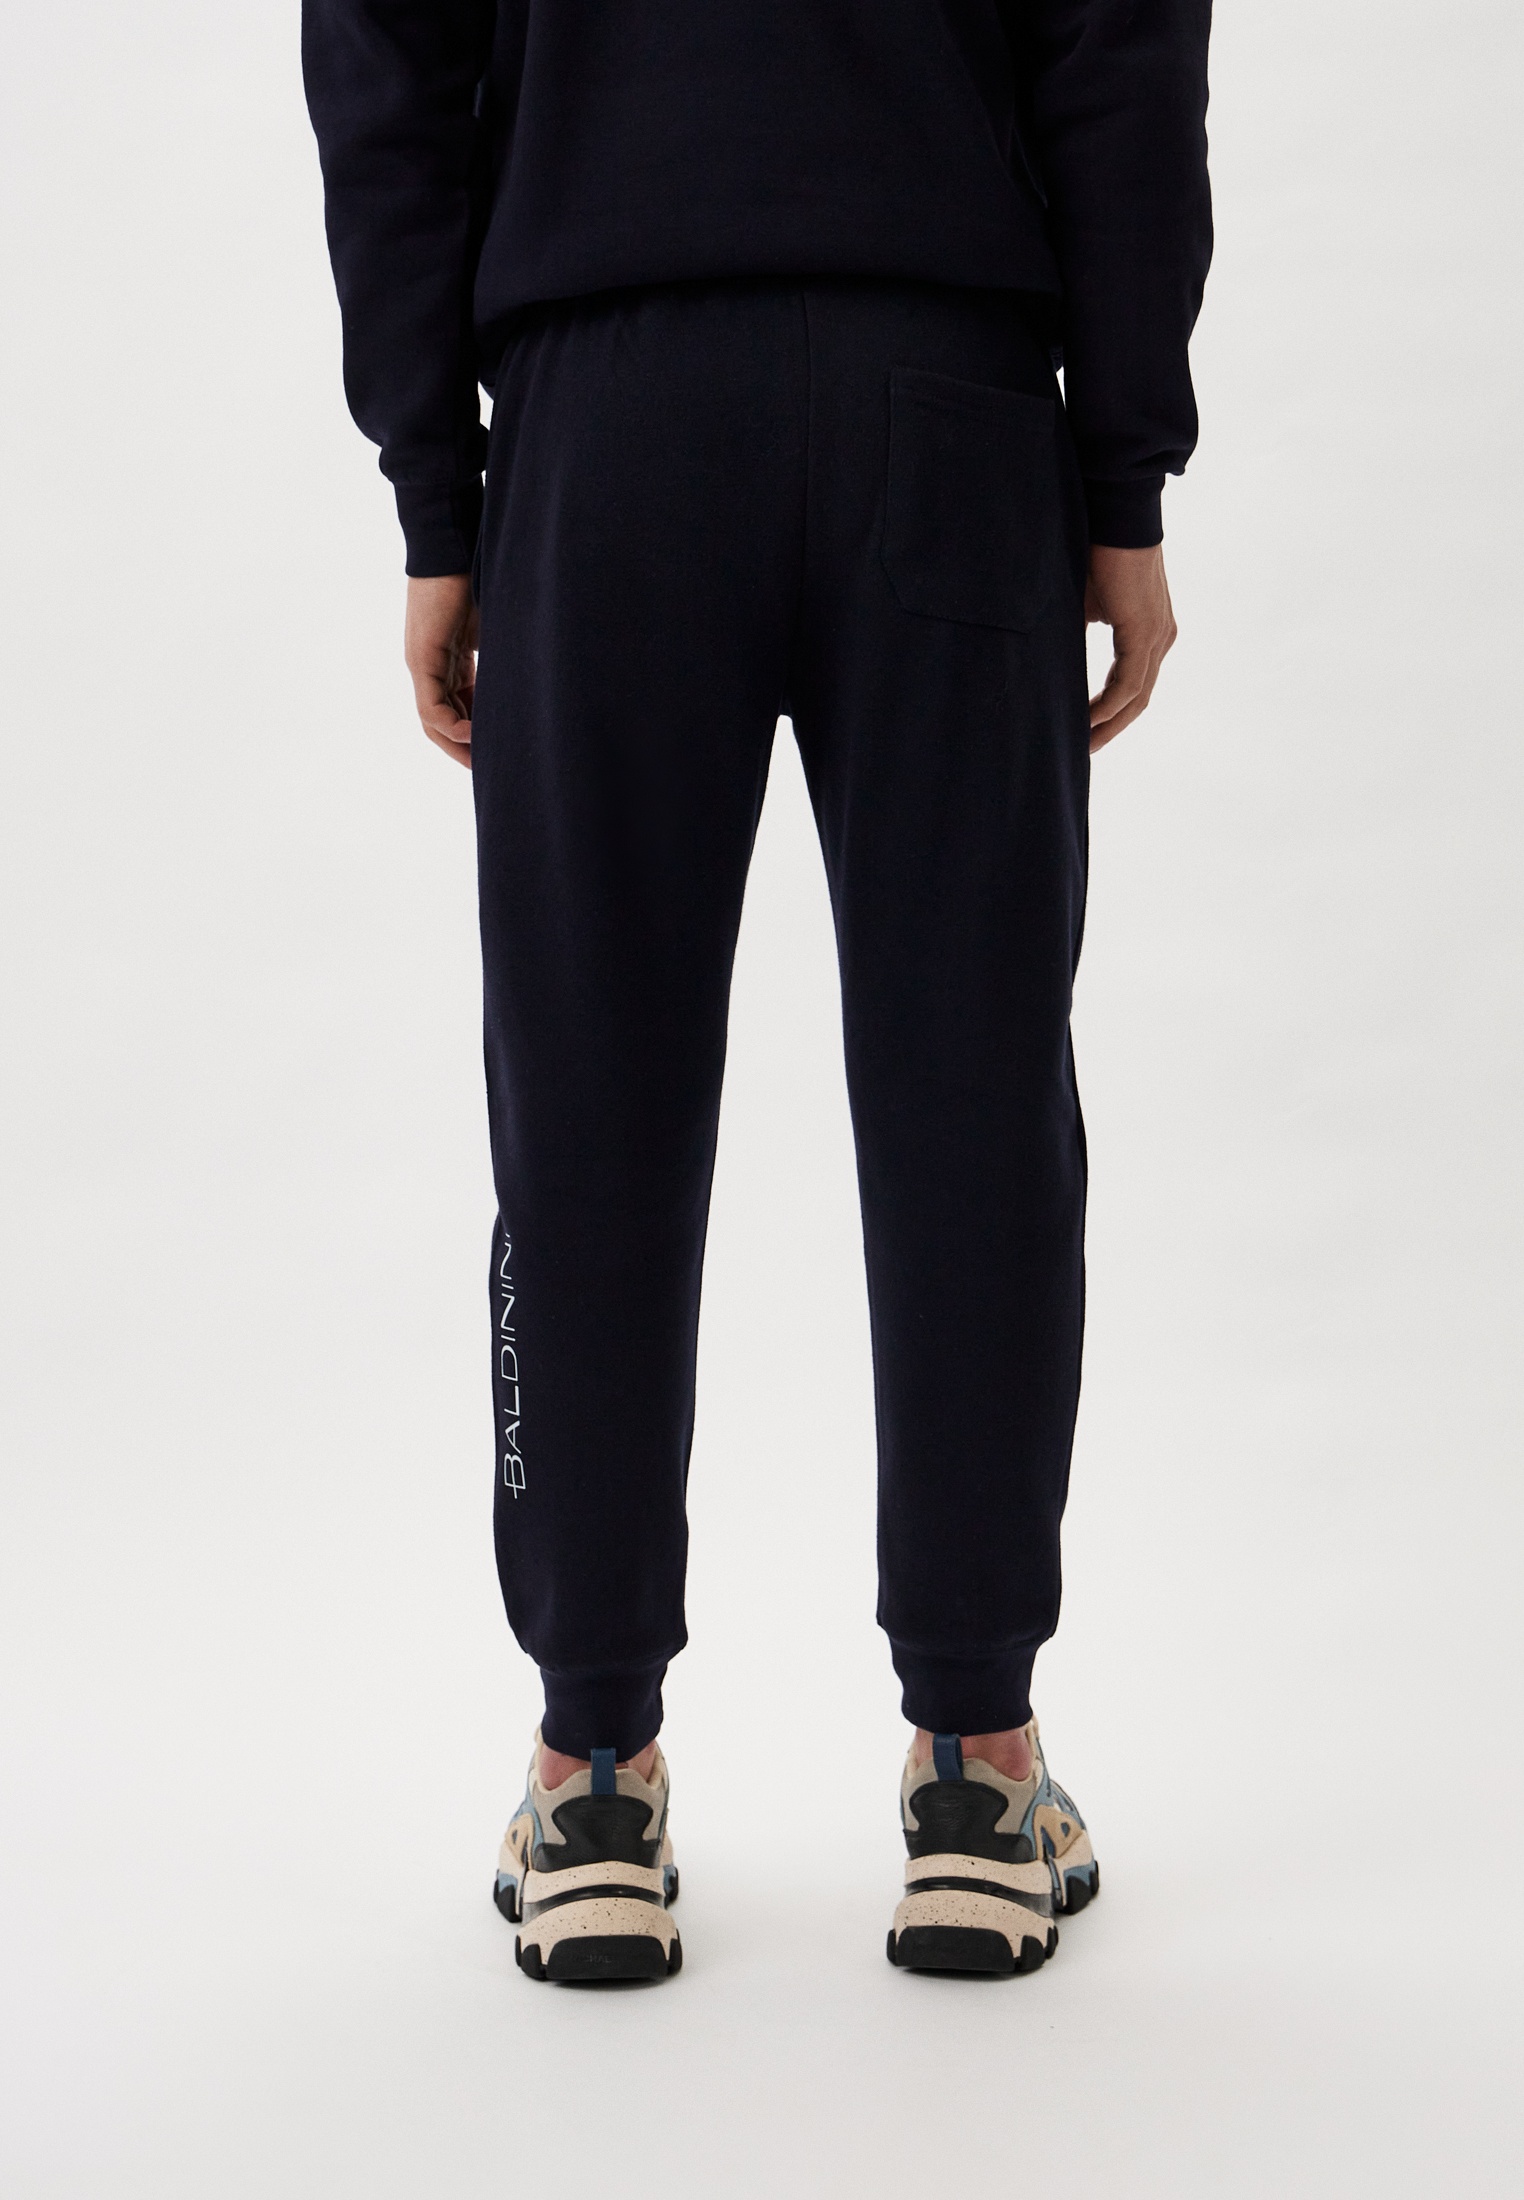 Мужские спортивные брюки Baldinini (Балдинини) B-OLM-M008: изображение 3